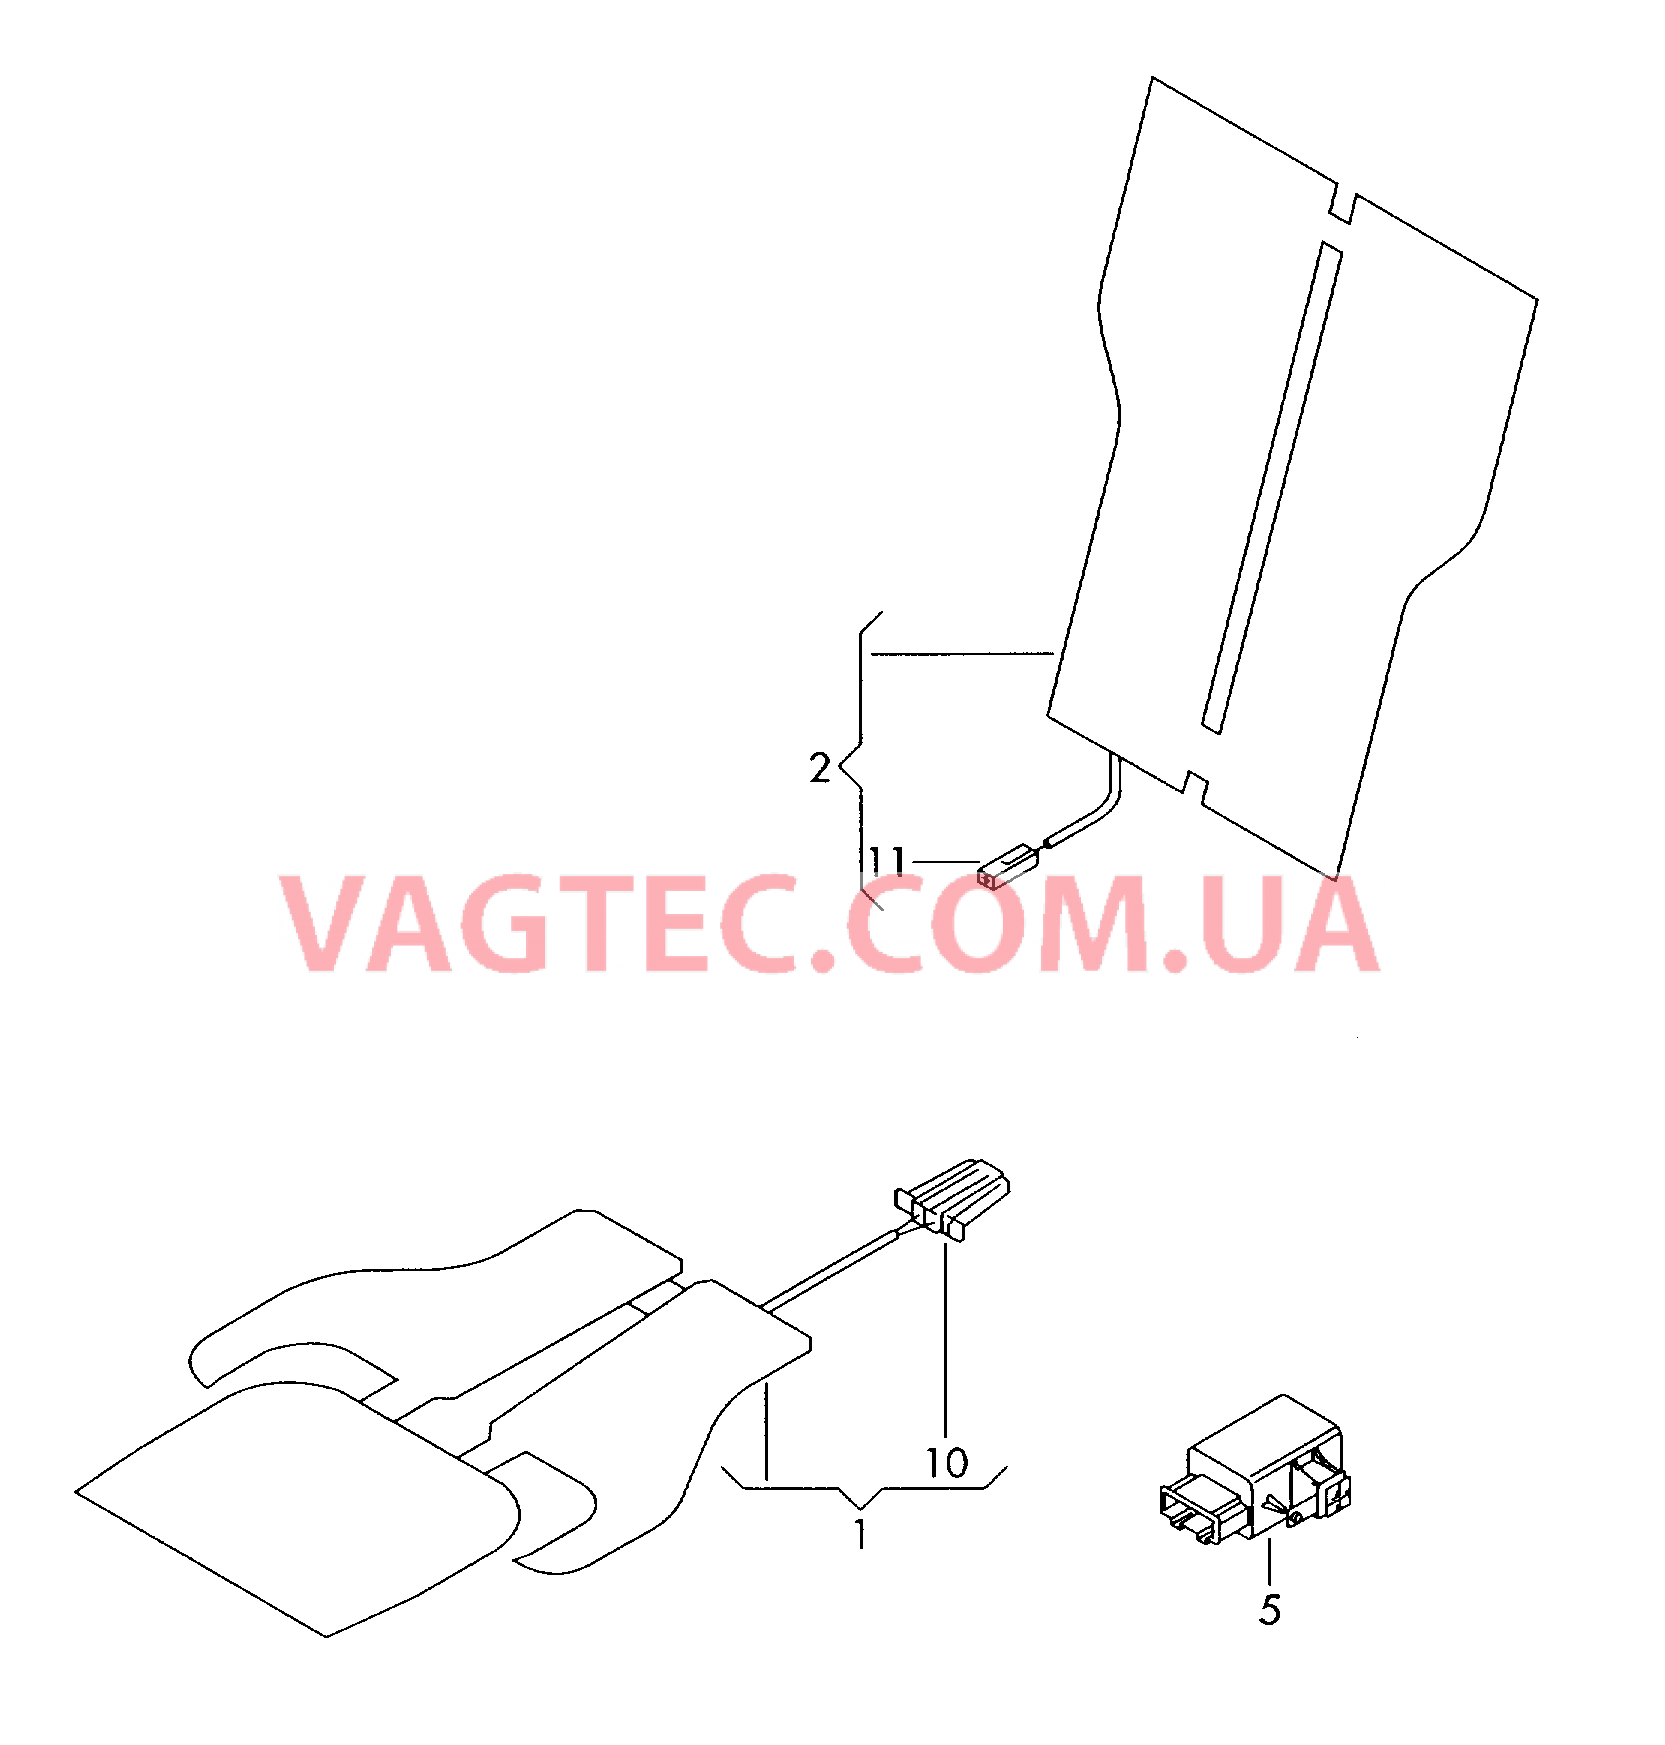 Электродетали для обогрева подушки и спинки сиденья  для VOLKSWAGEN CC 2016